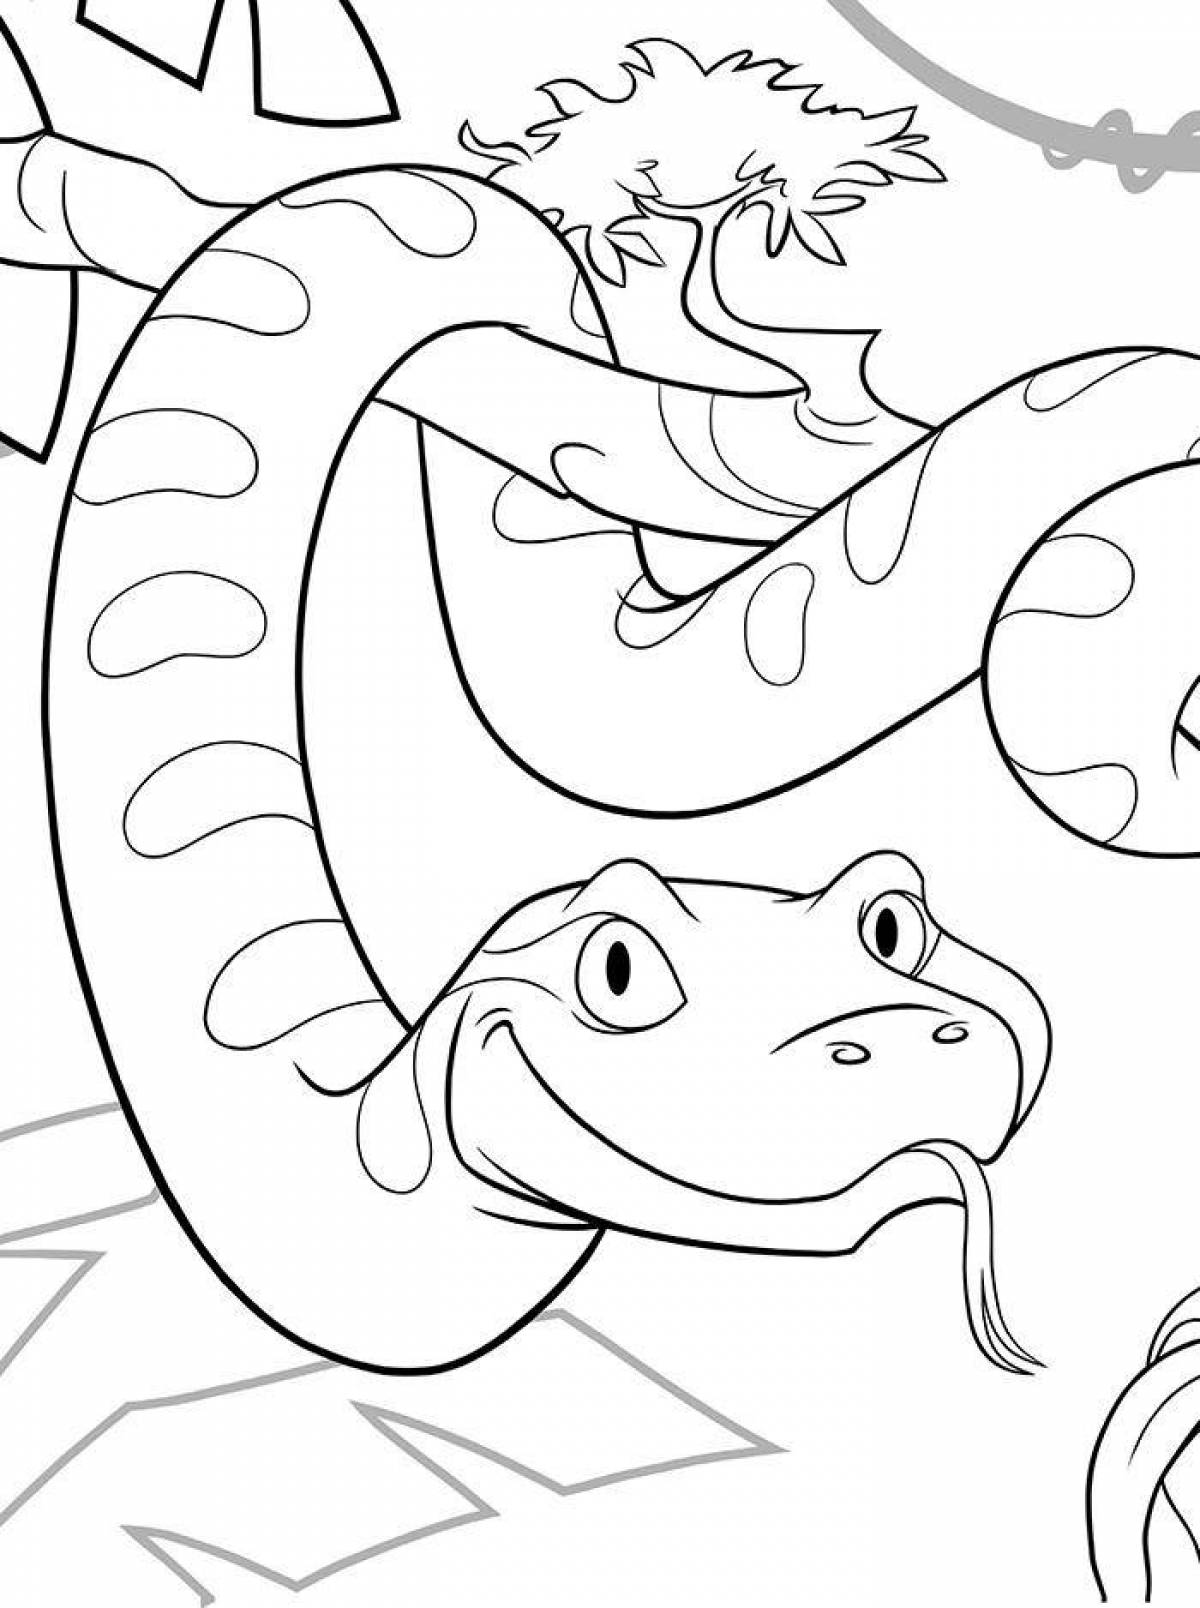 Amazing anaconda coloring page